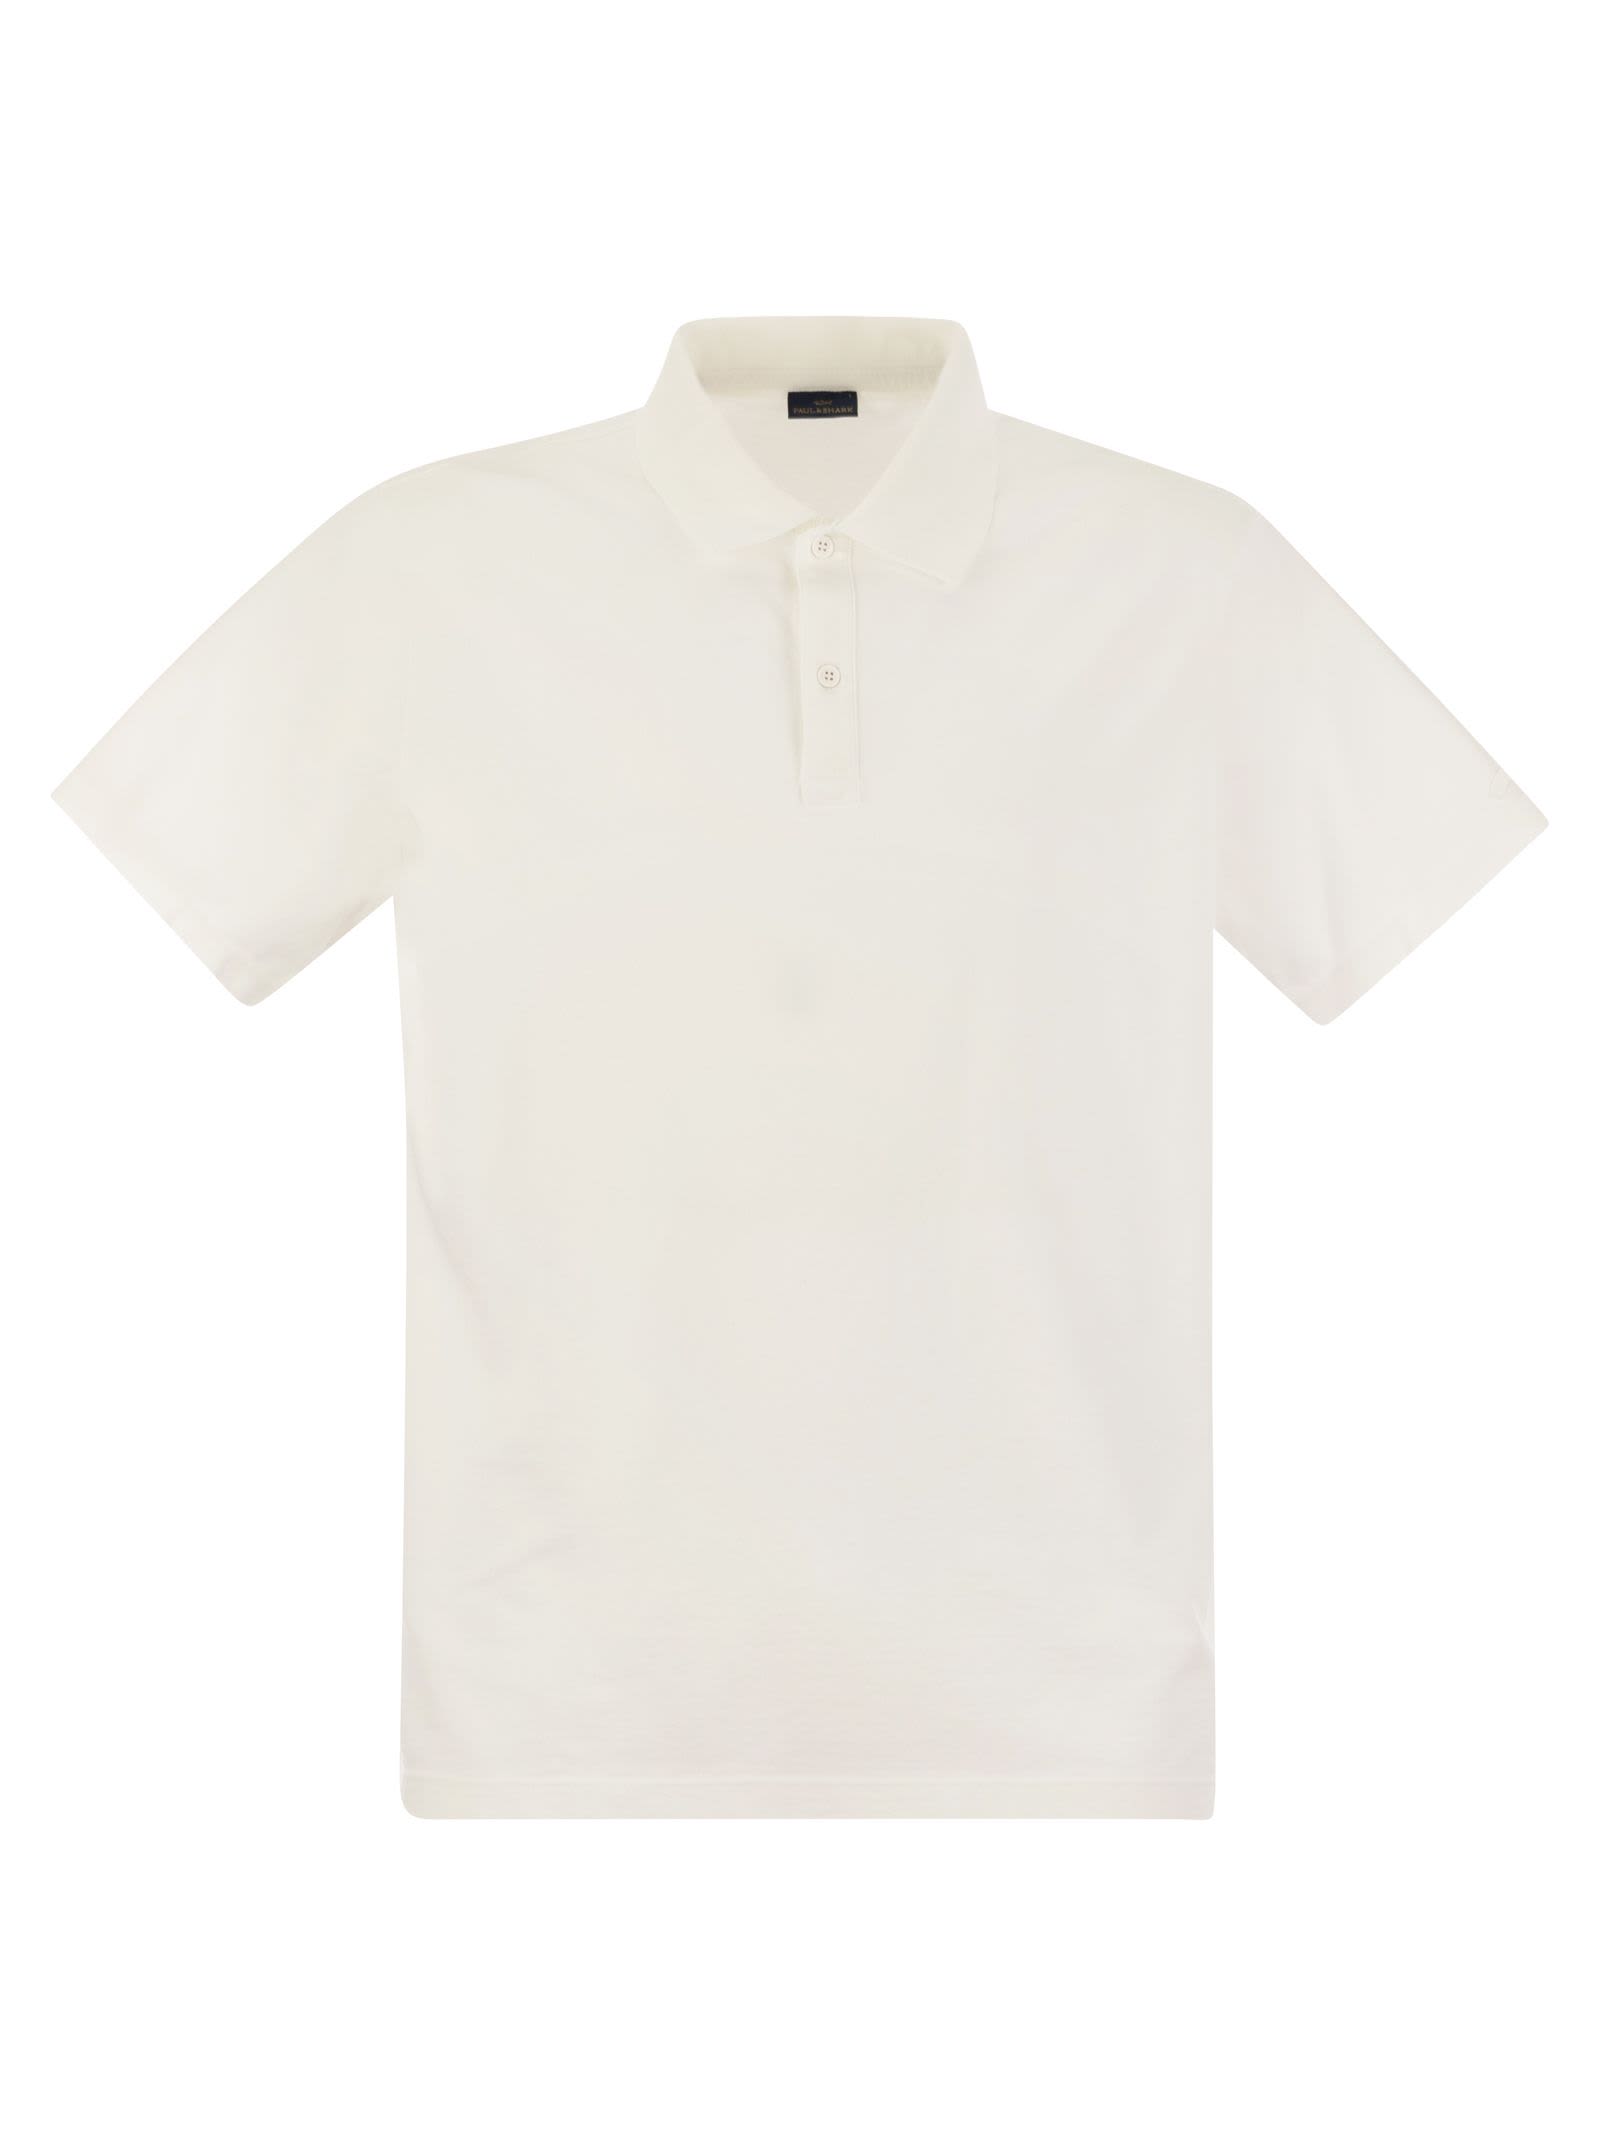 Garment-dyed Pique Cotton Polo Shirt